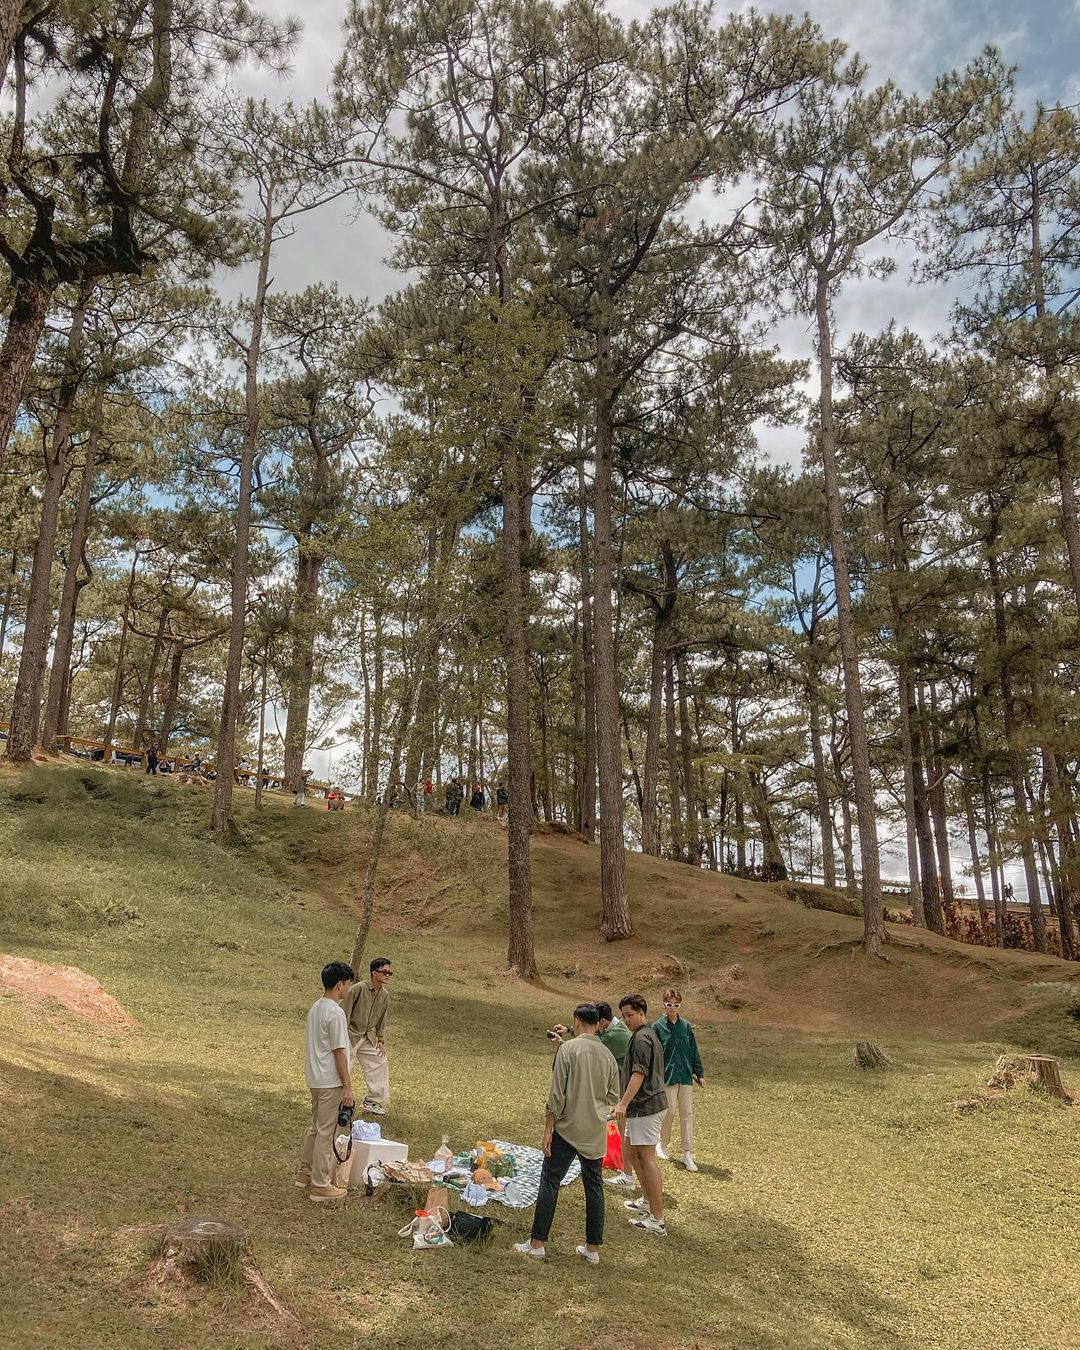 Baguio City - Camp John Hay